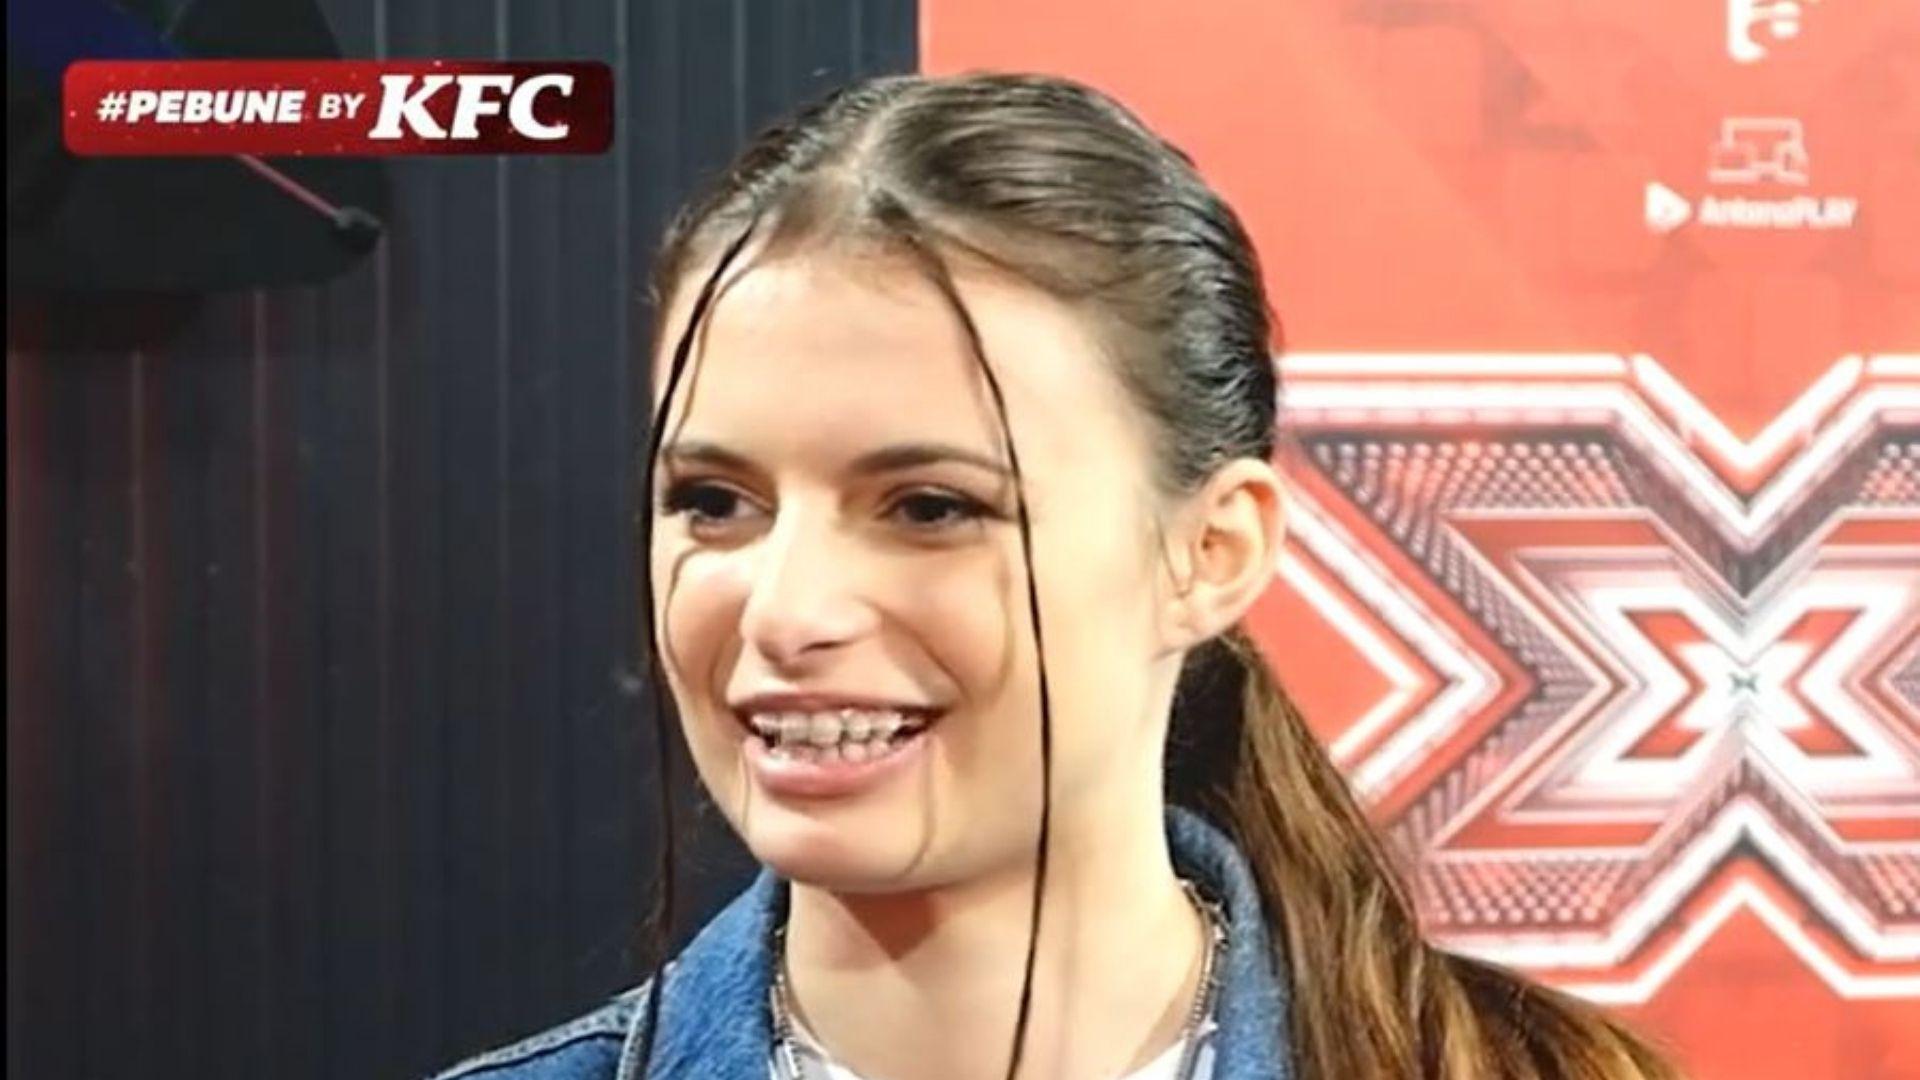 Flavia Leu a răspuns provocării #pebune făcute de KFC. „E una dintre cele mai tari experiențe din viața mea”